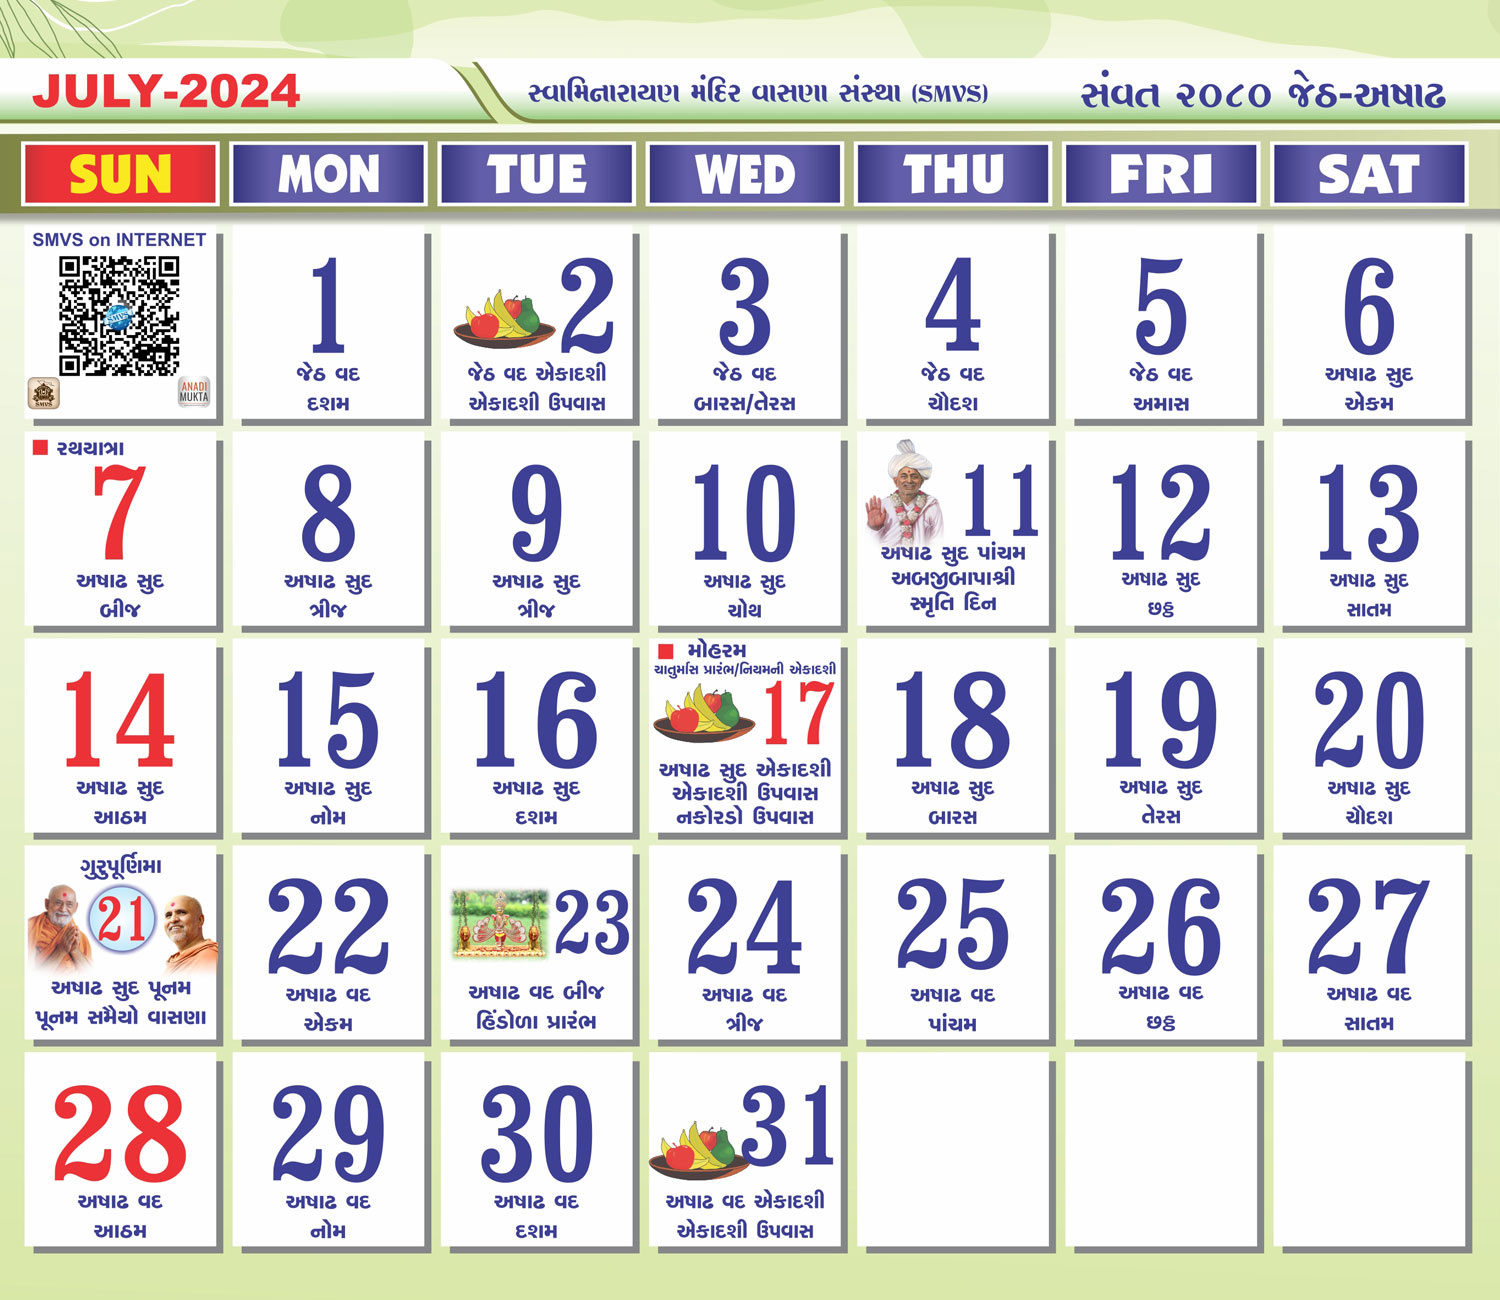 Swaminarayan Mandir Vasna Sanstha - Smvs with July 2024 Gujarati Calendar